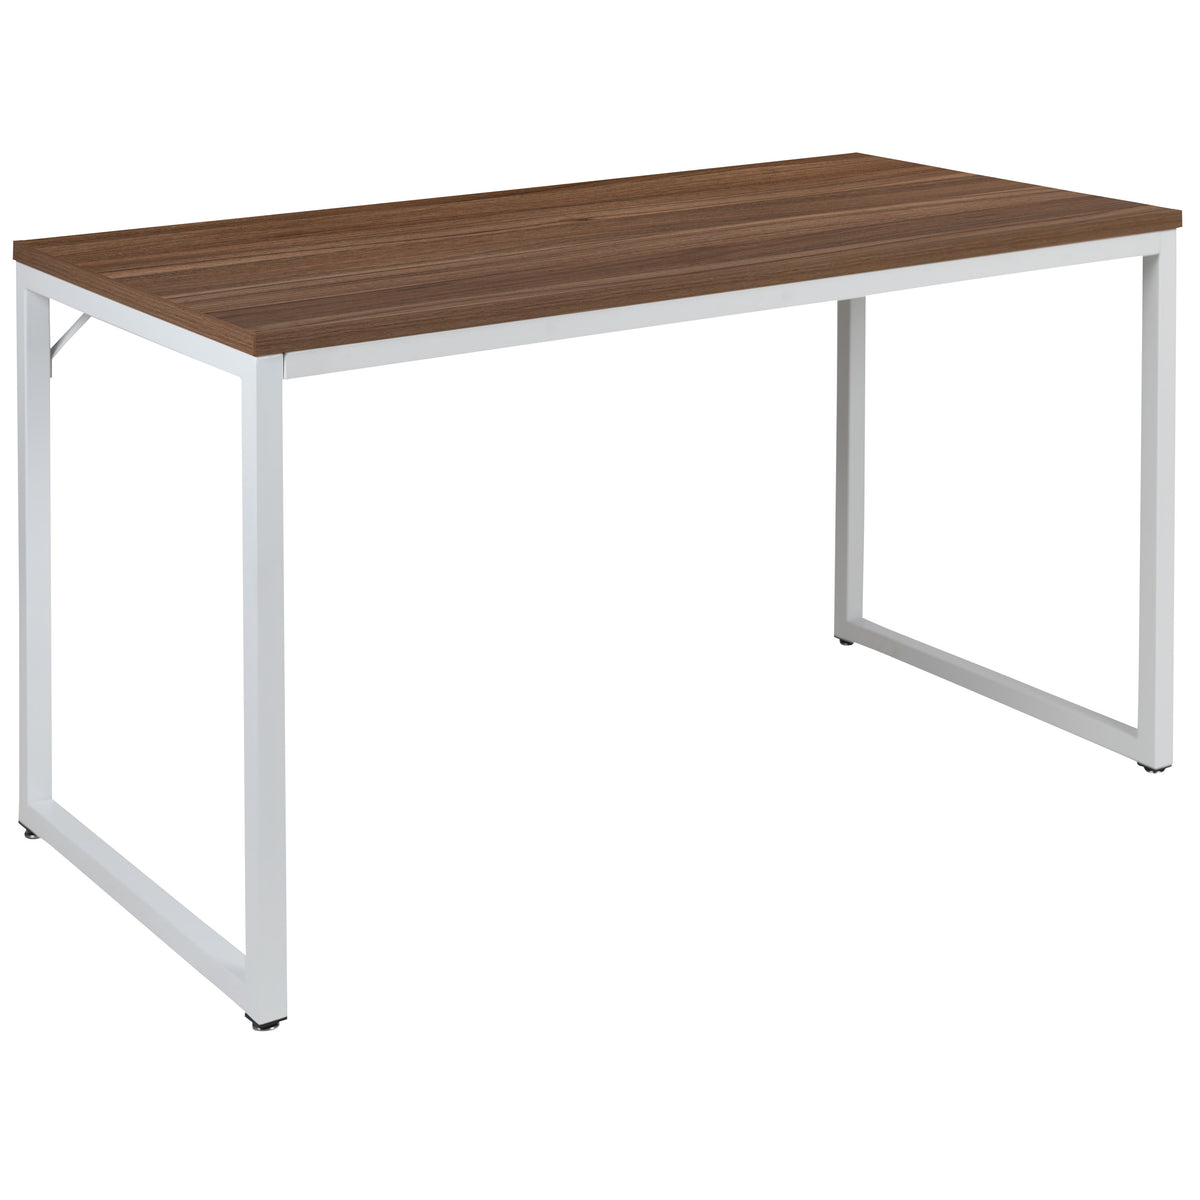 Walnut Top/White Frame |#| Industrial Modern Desk-47inchL Commercial Grade Home Office Desk-Walnut/White